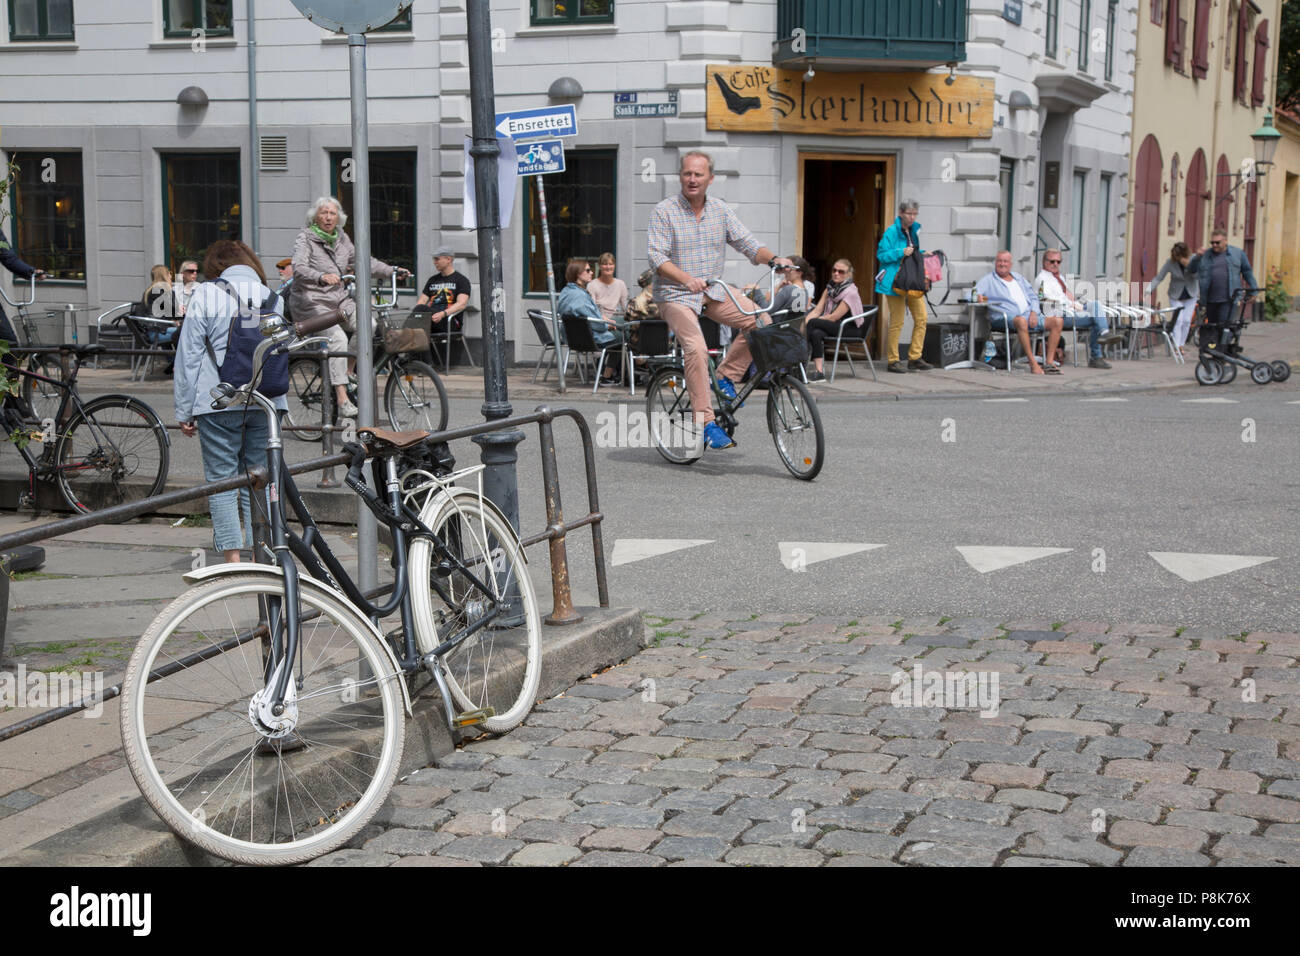 Man on Bike outside Cafe Staerkodder; Copenhagen; Denmark Stock Photo -